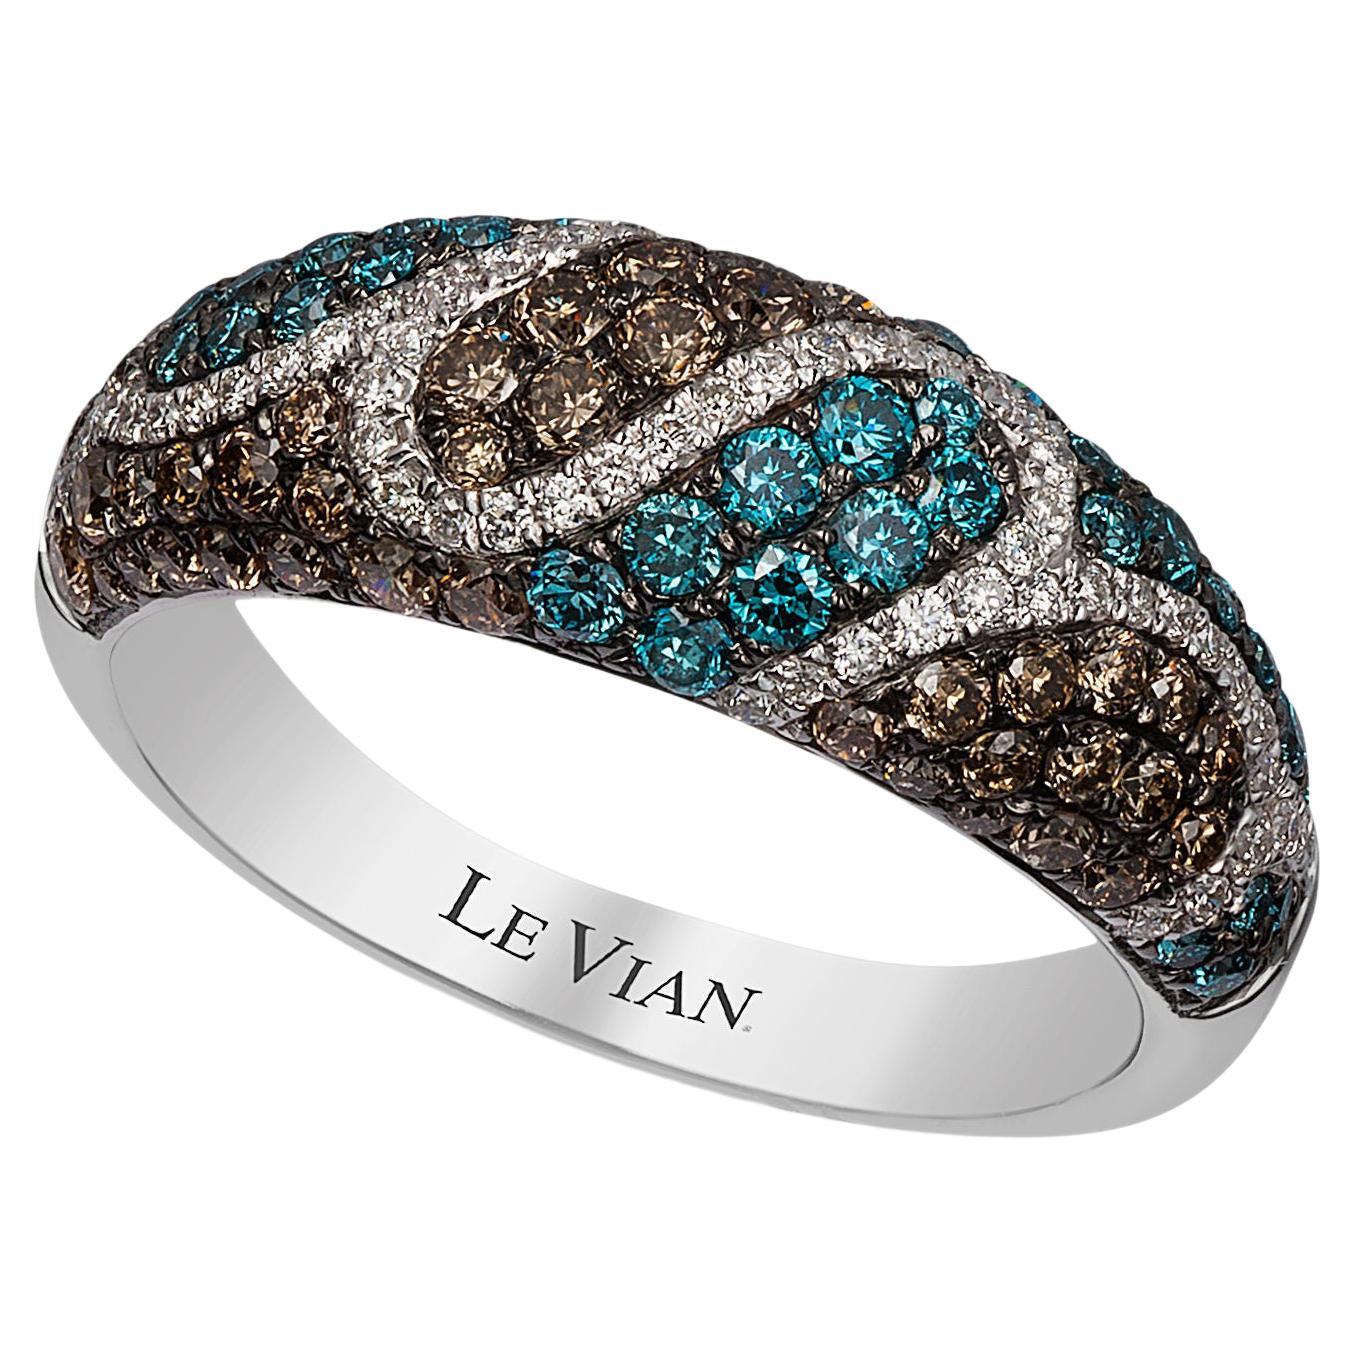 LeVian Ring mit blauen, schokoladenbraunen und weißen Diamanten, gefasst in 14K Weißgold